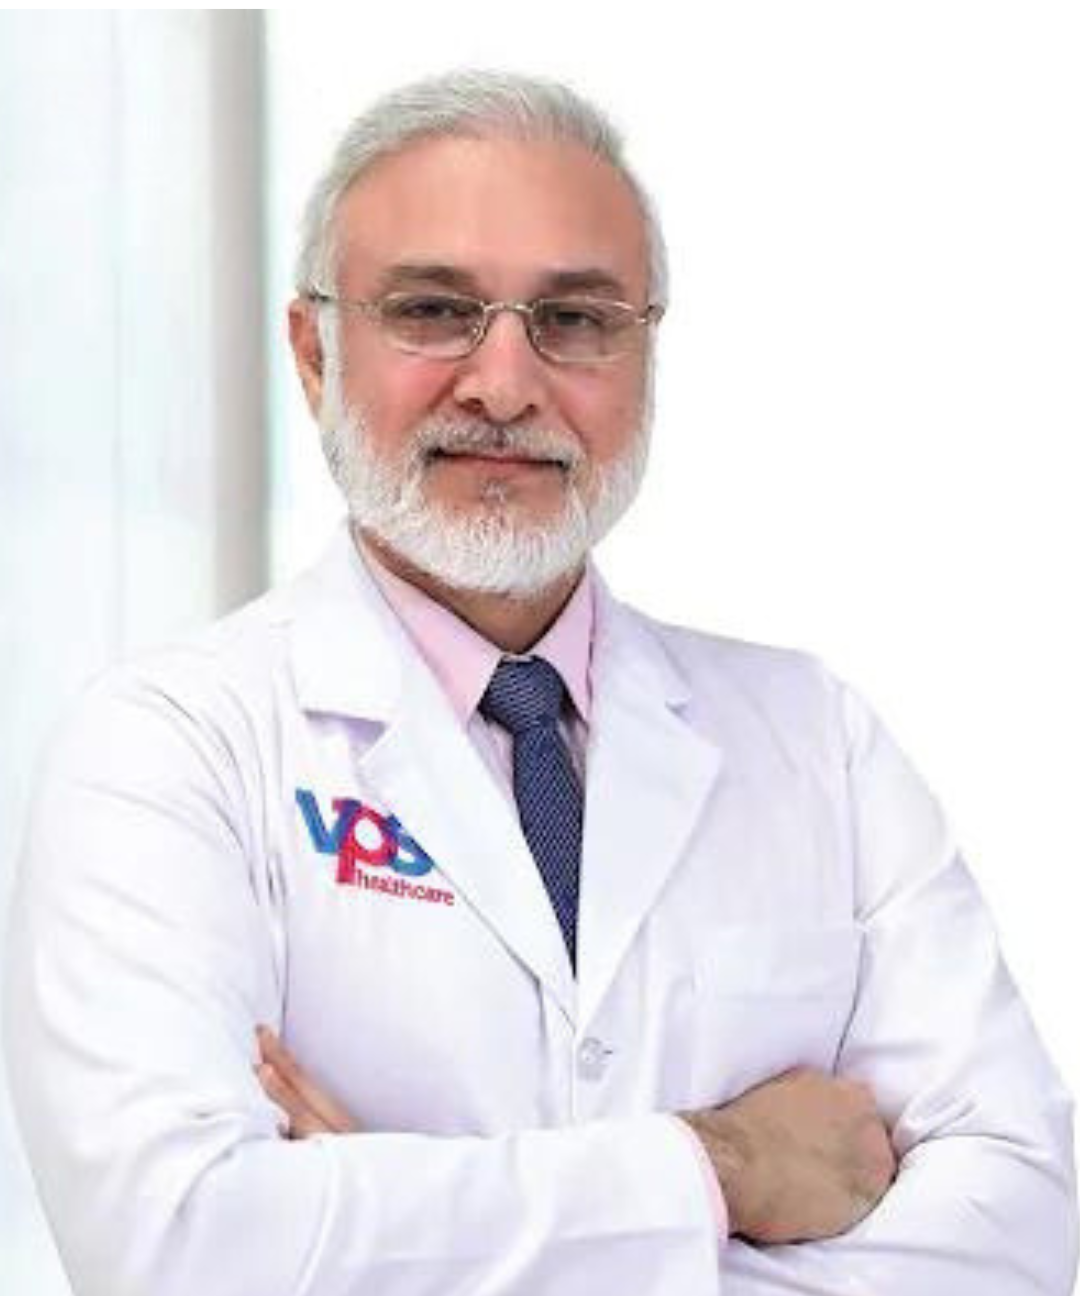 Portrait of Dr. Abdulhadi Quadri